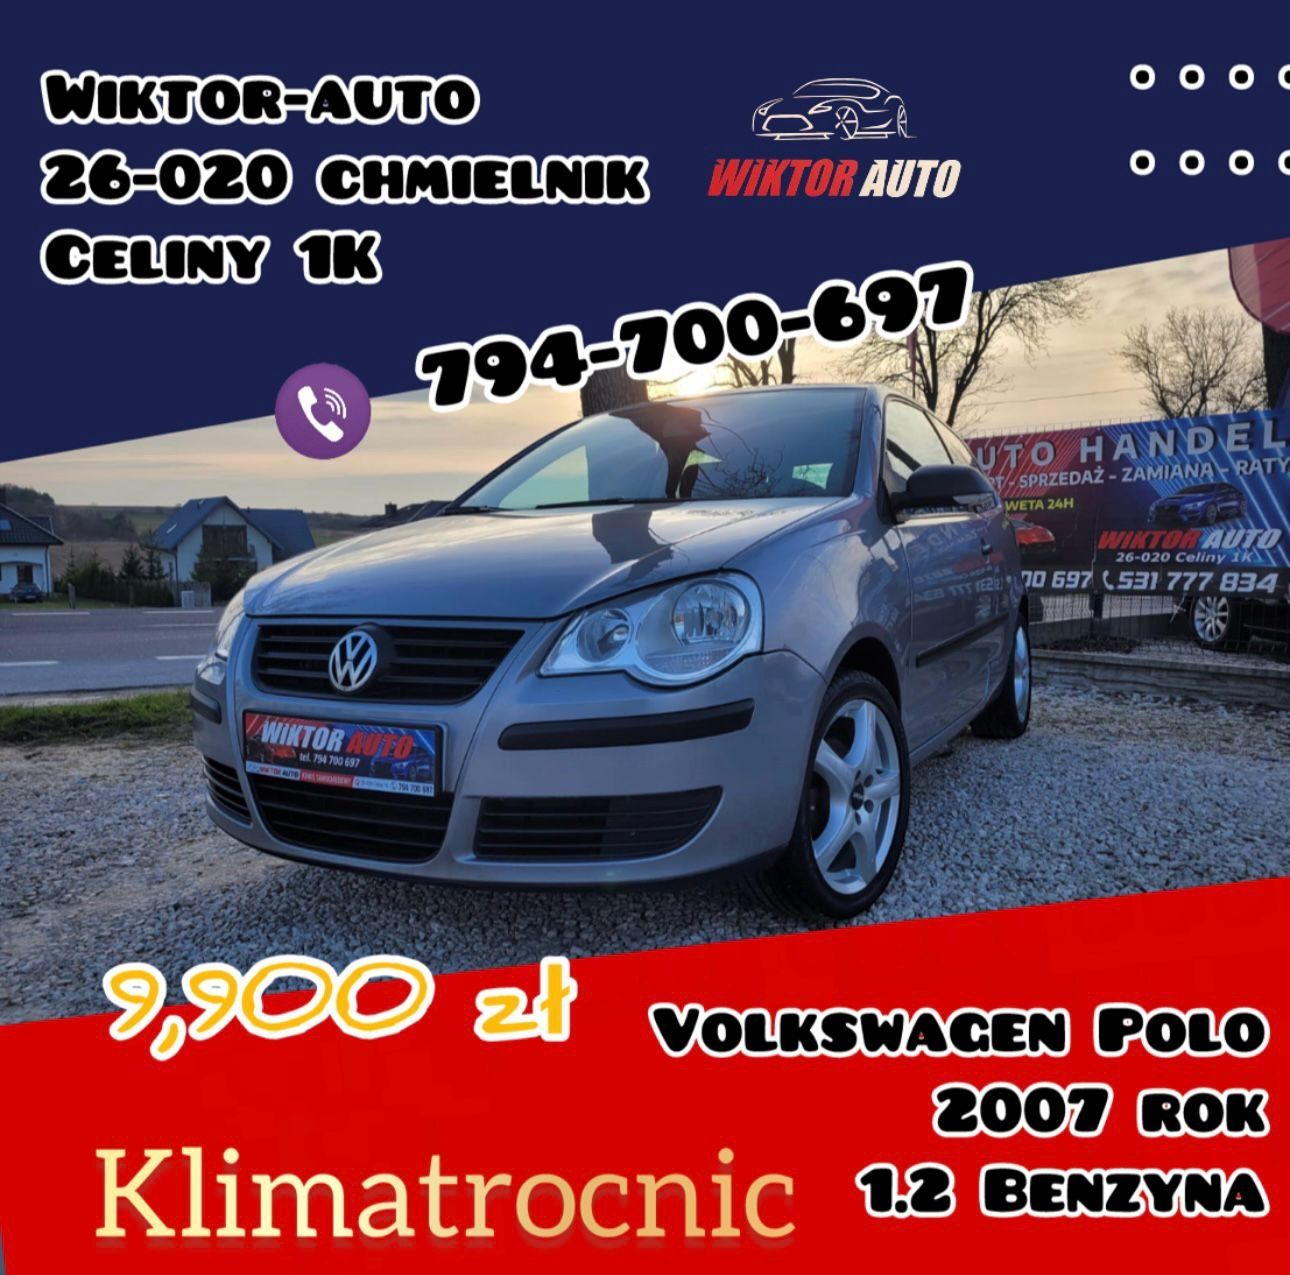 VW Polo*2007 rok*1,2 B*Klimatronic*Godna uwagi*Po opłatach*